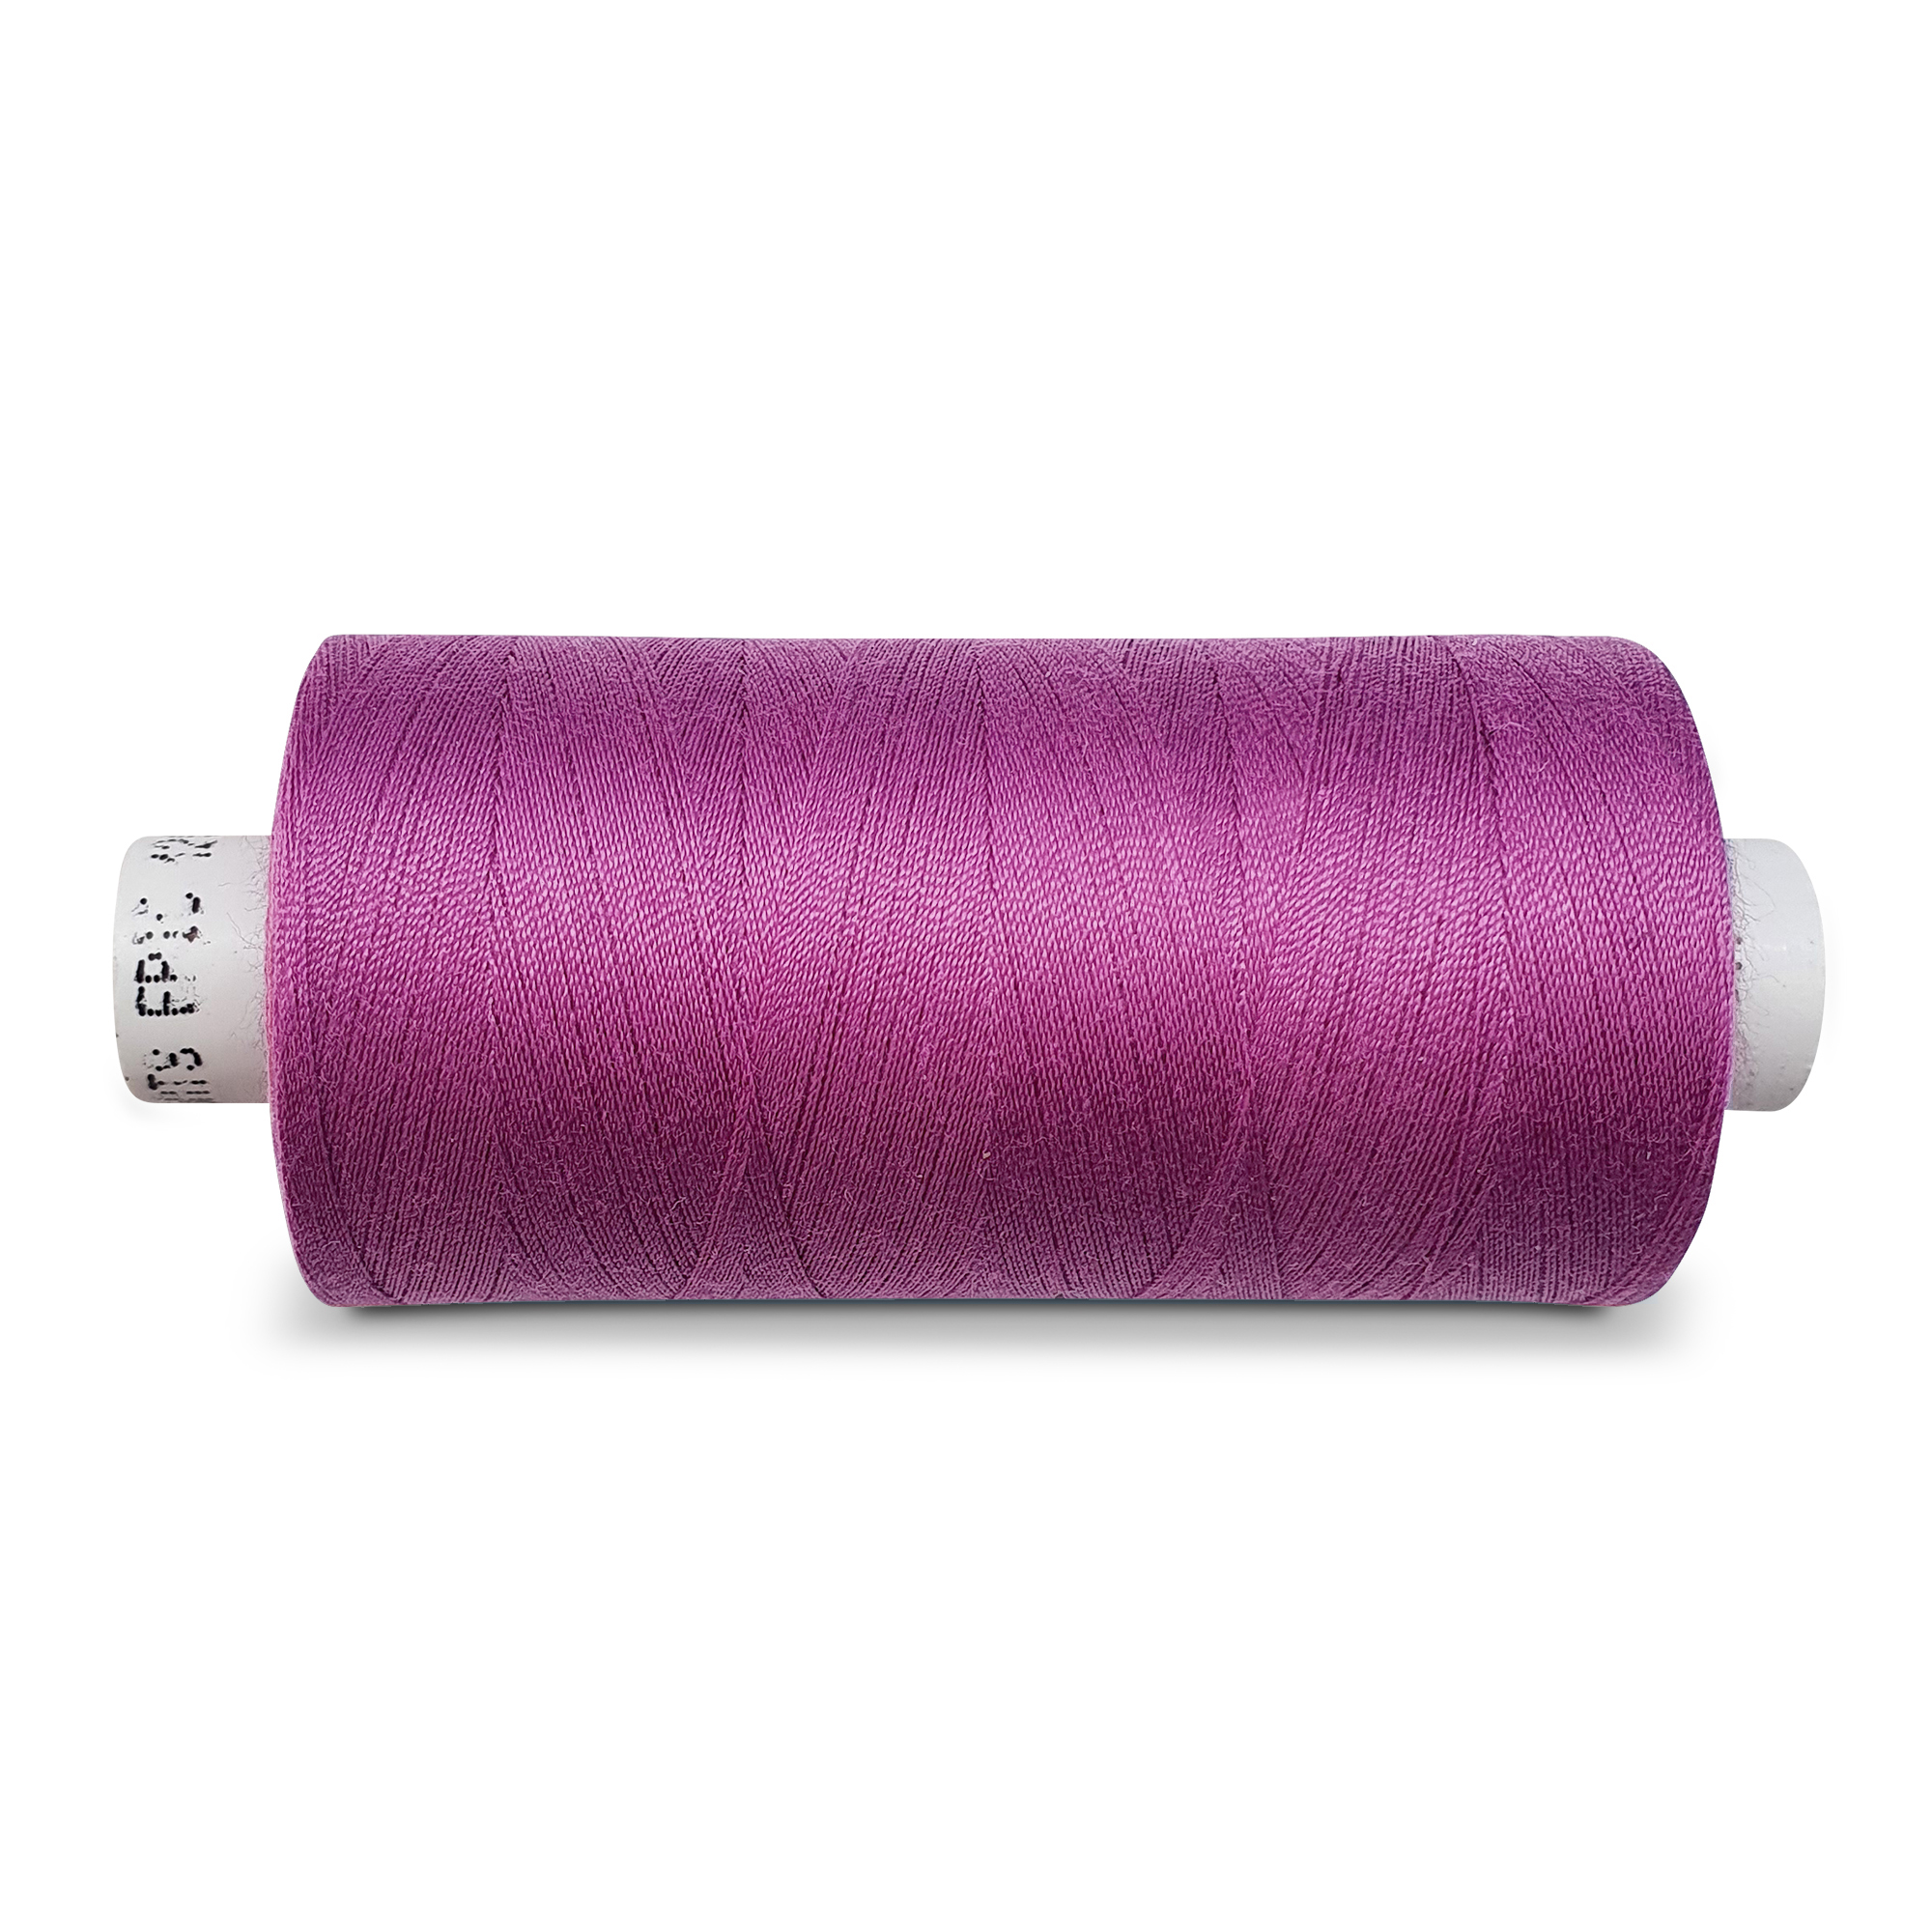 Sewing thread big, 5000m, cyclam